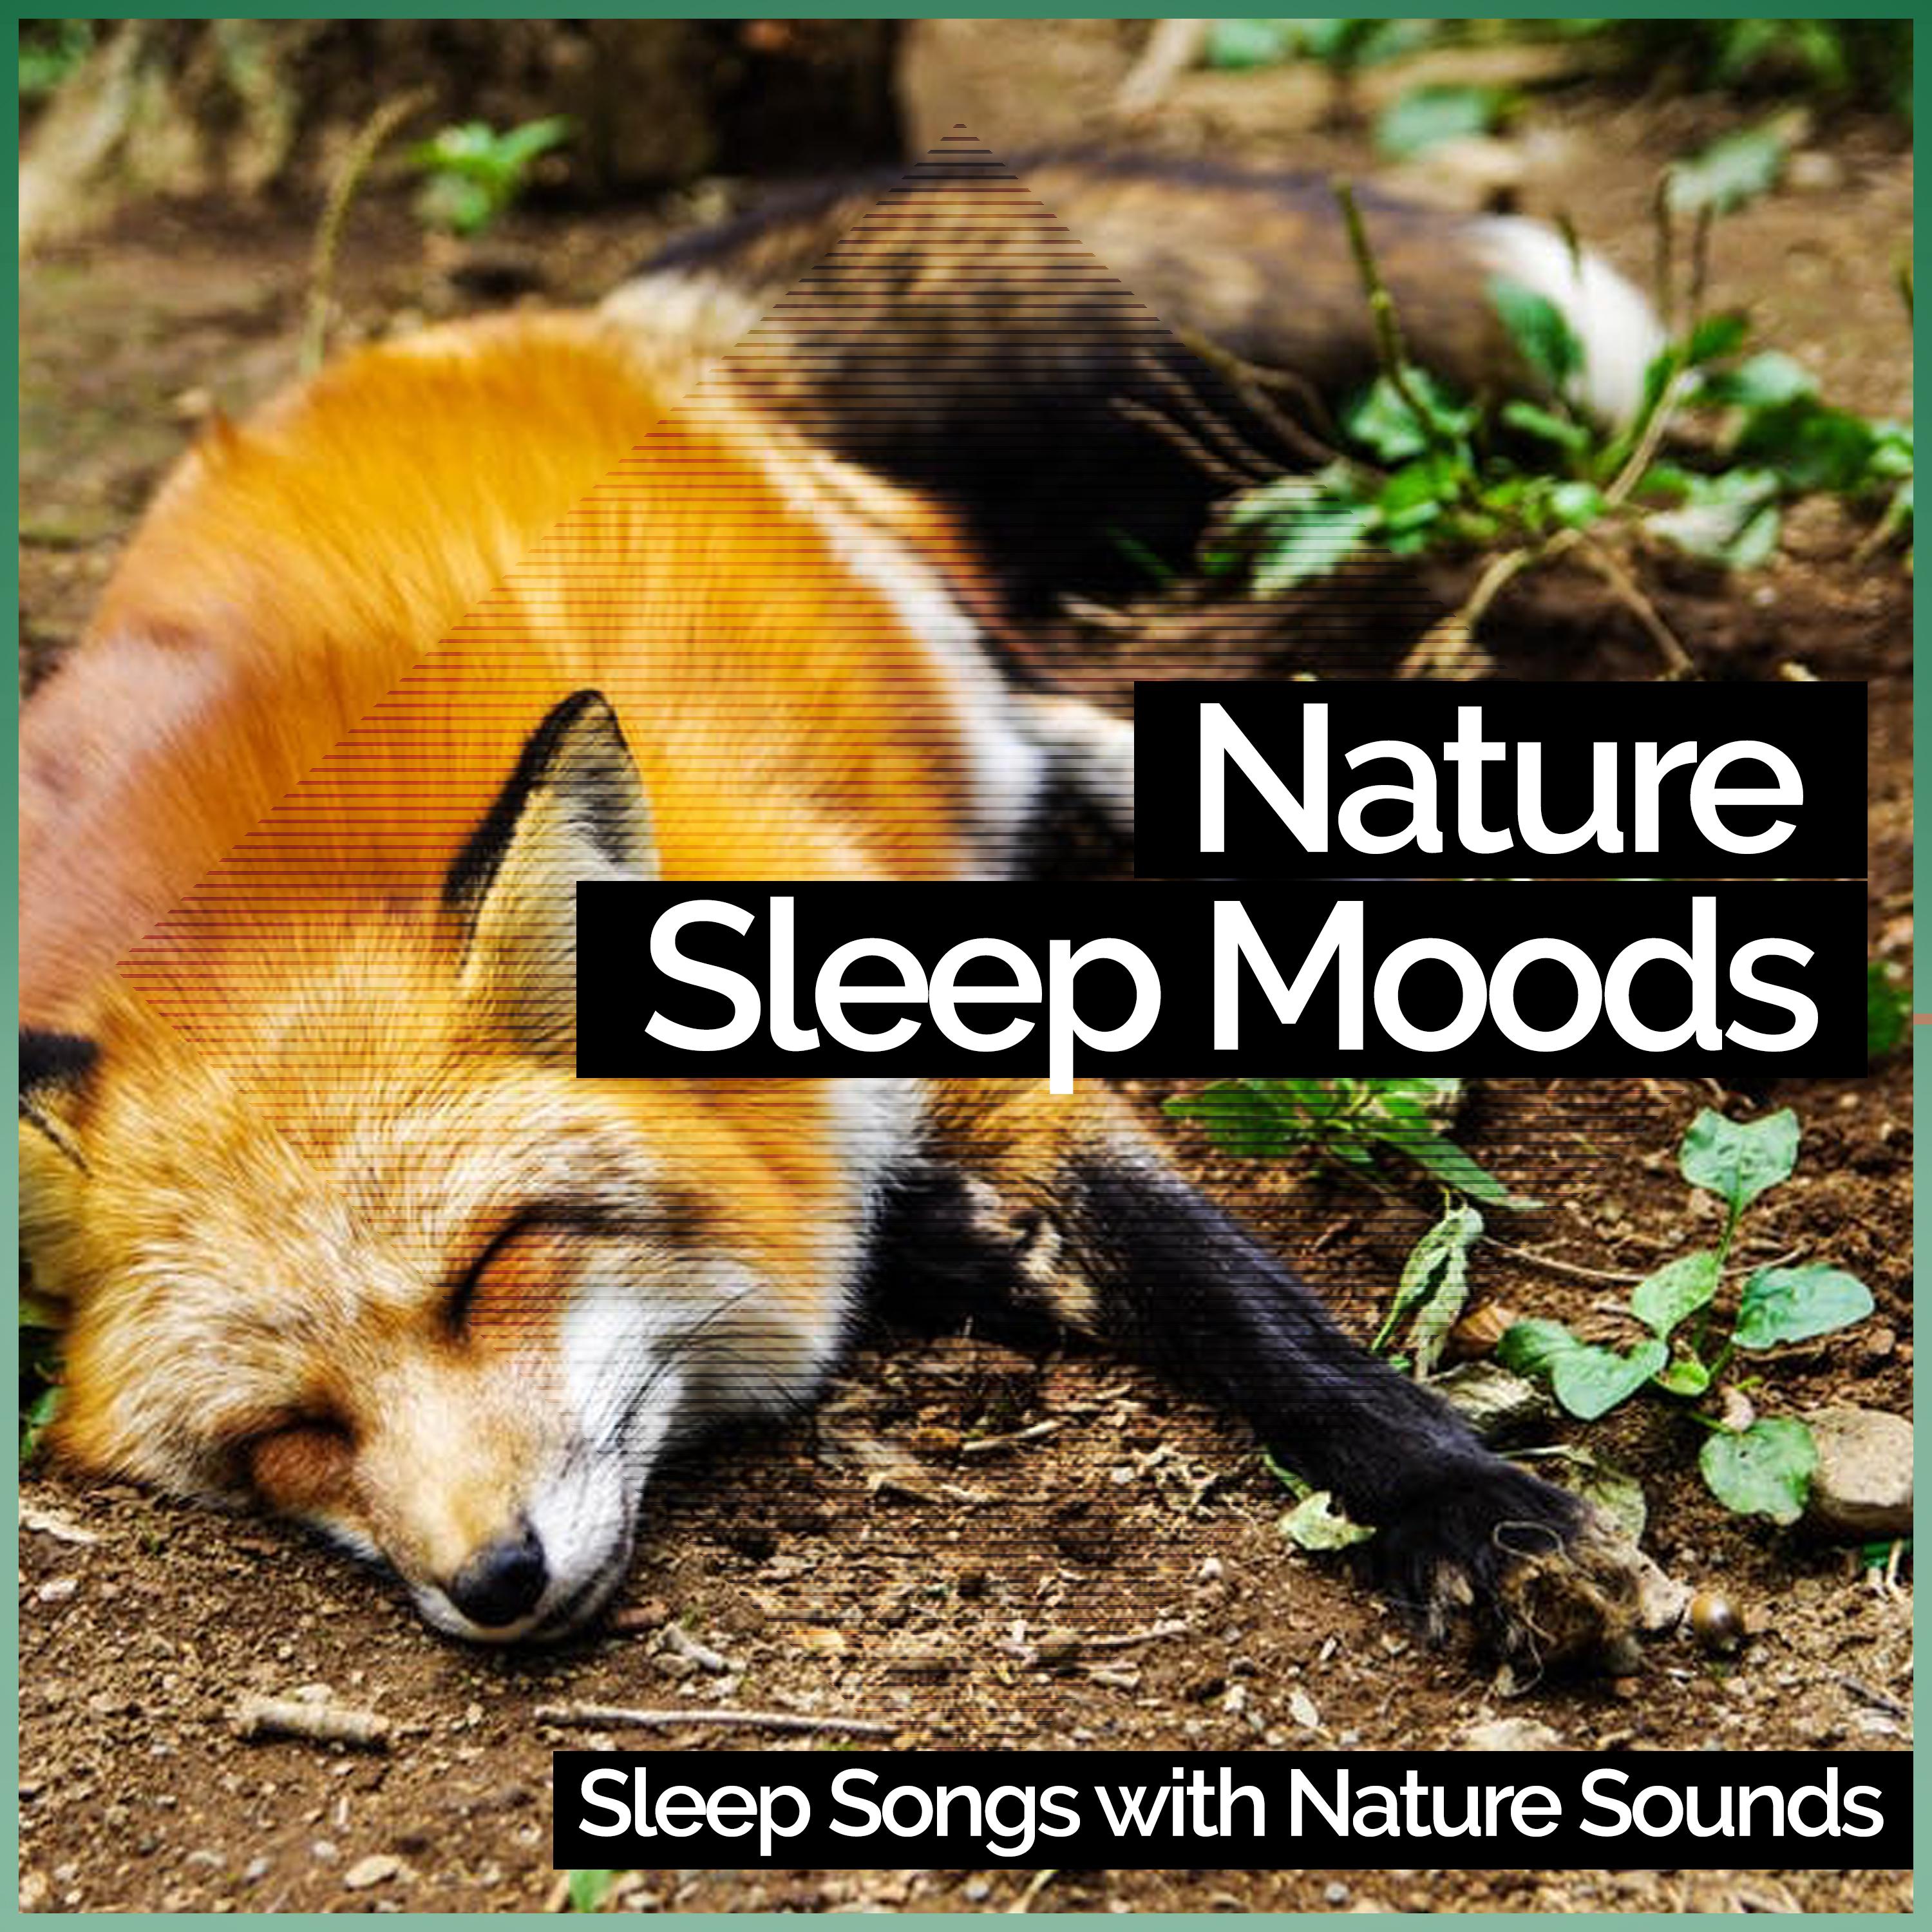 Nature Sleep Moods